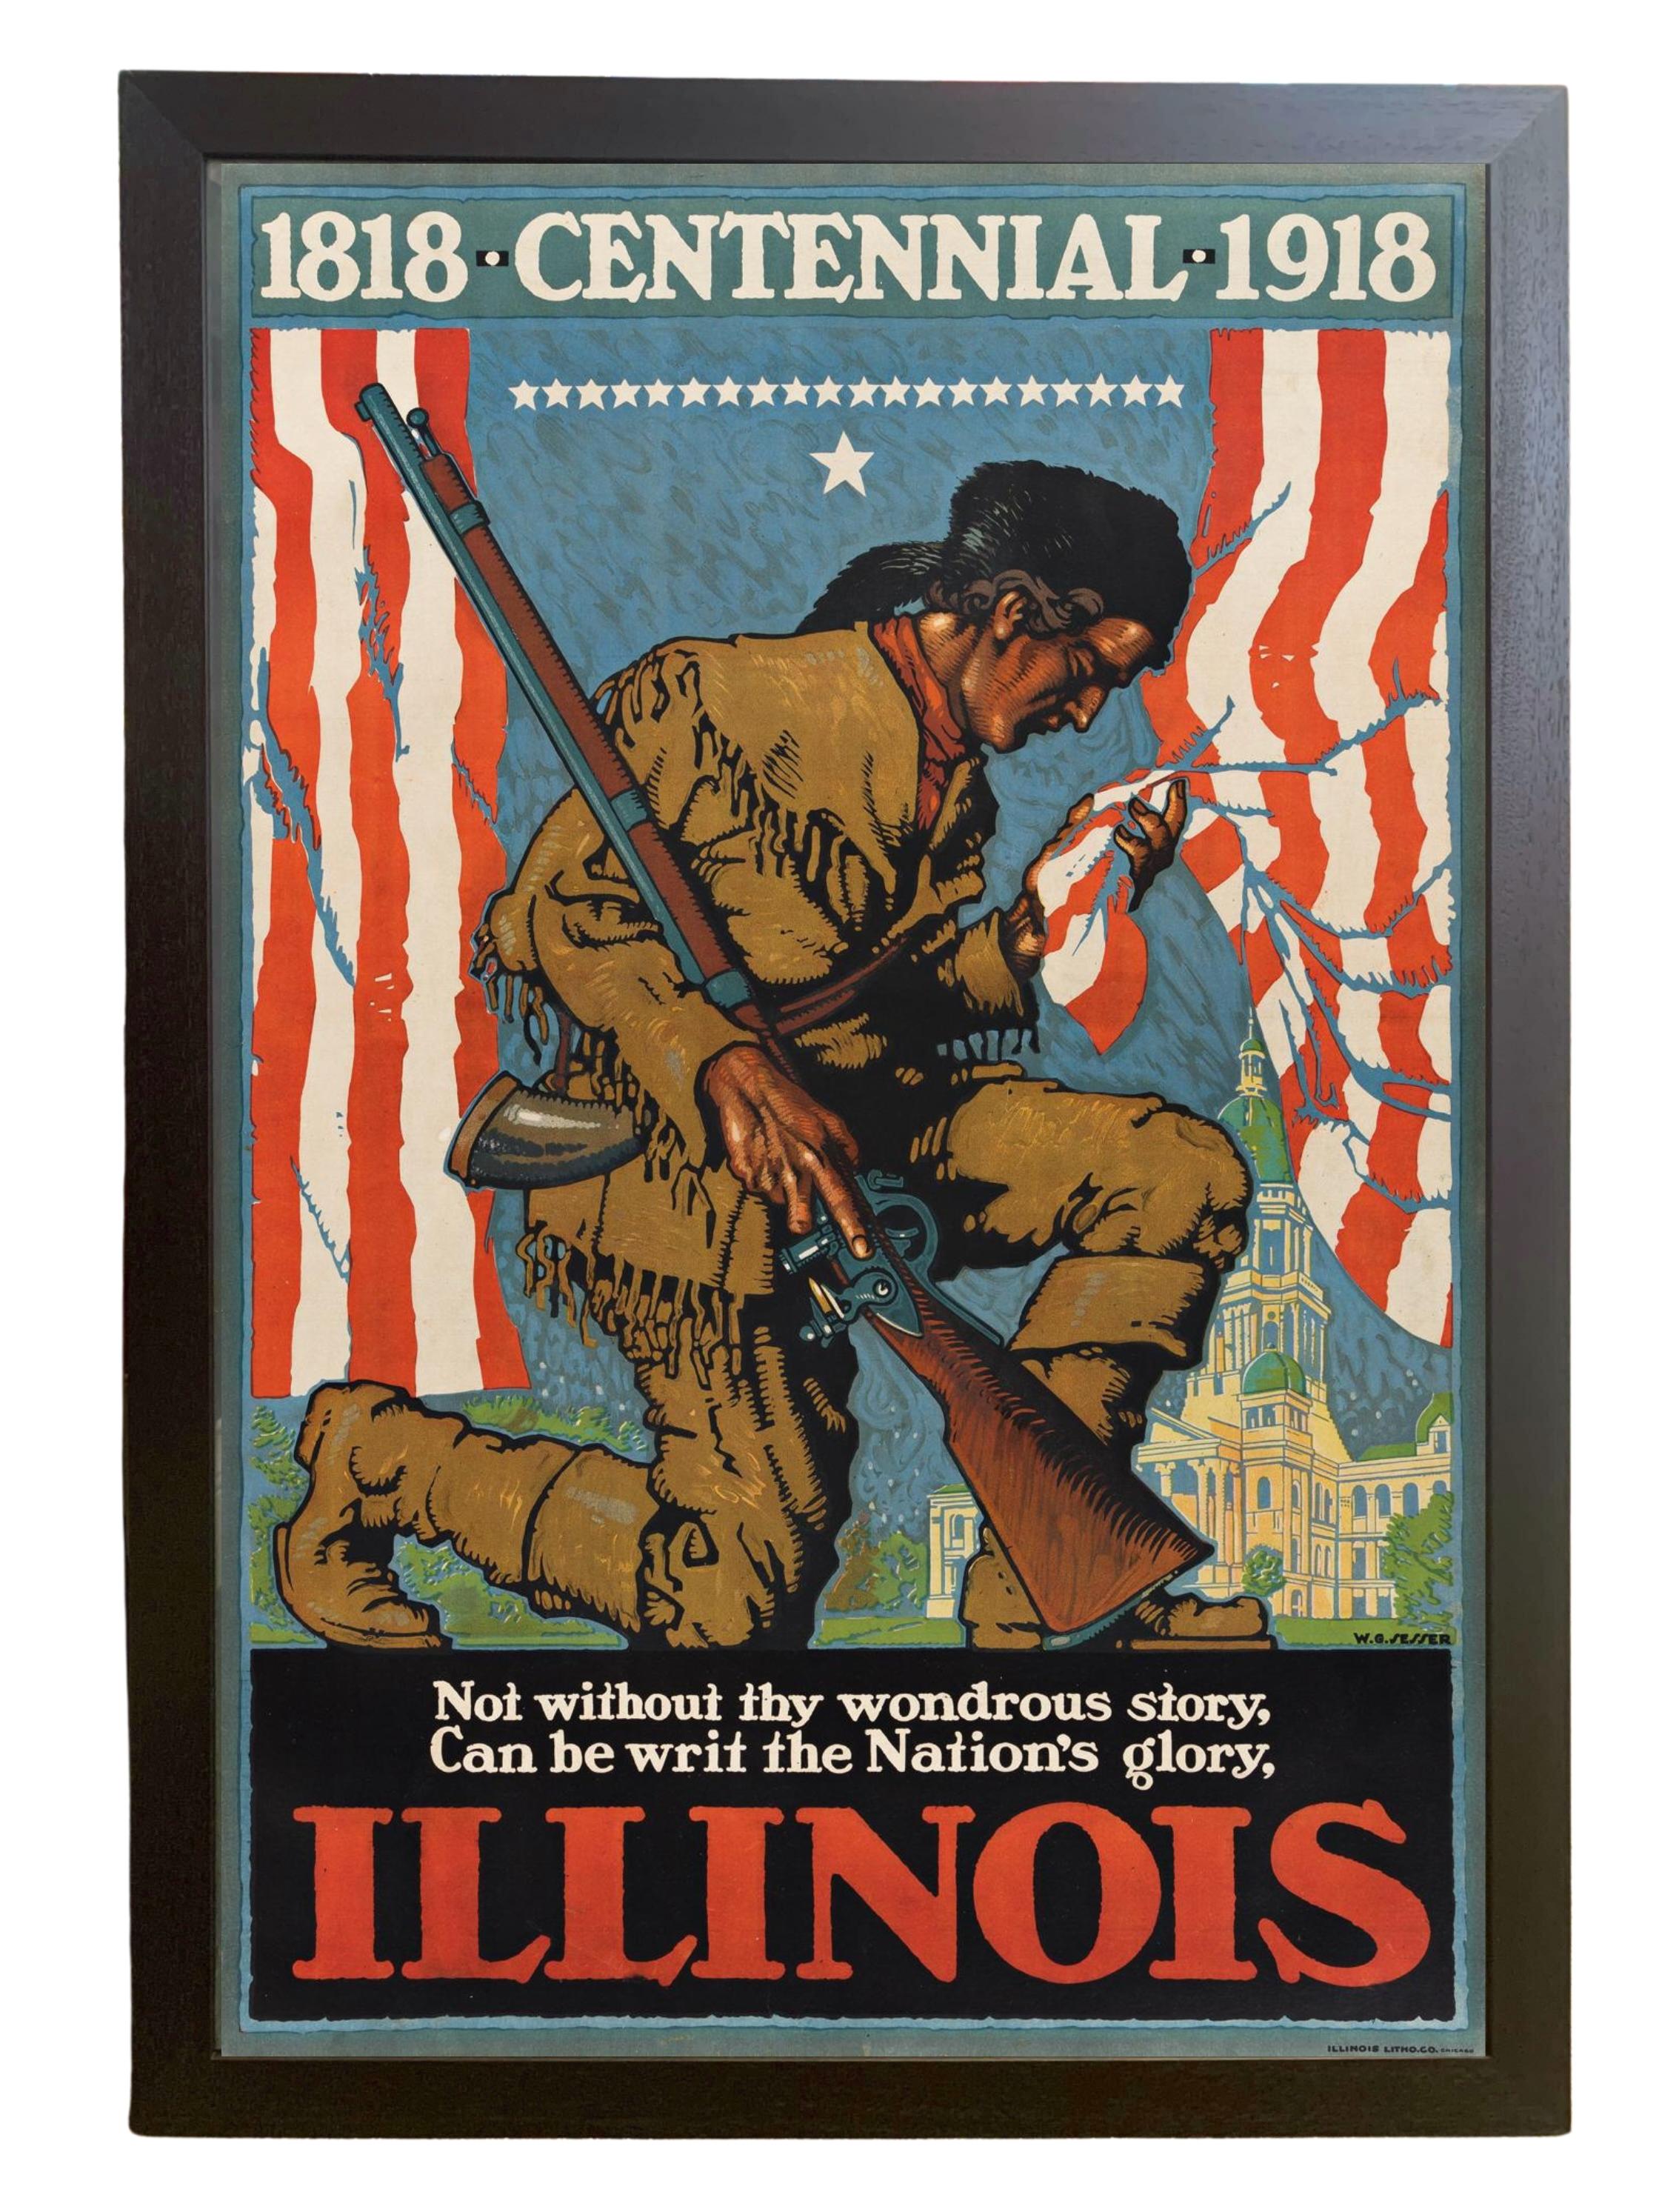 Presentamos un cartel muy raro y coleccionable del Centenario de Illinois de 1918, obra de Willy Sesser. El cartel se ofrece aquí  en su mayor tamaño publicado, impreso a todo color. El cartel fue impreso por Illinois Litho. Co., en Chicago.